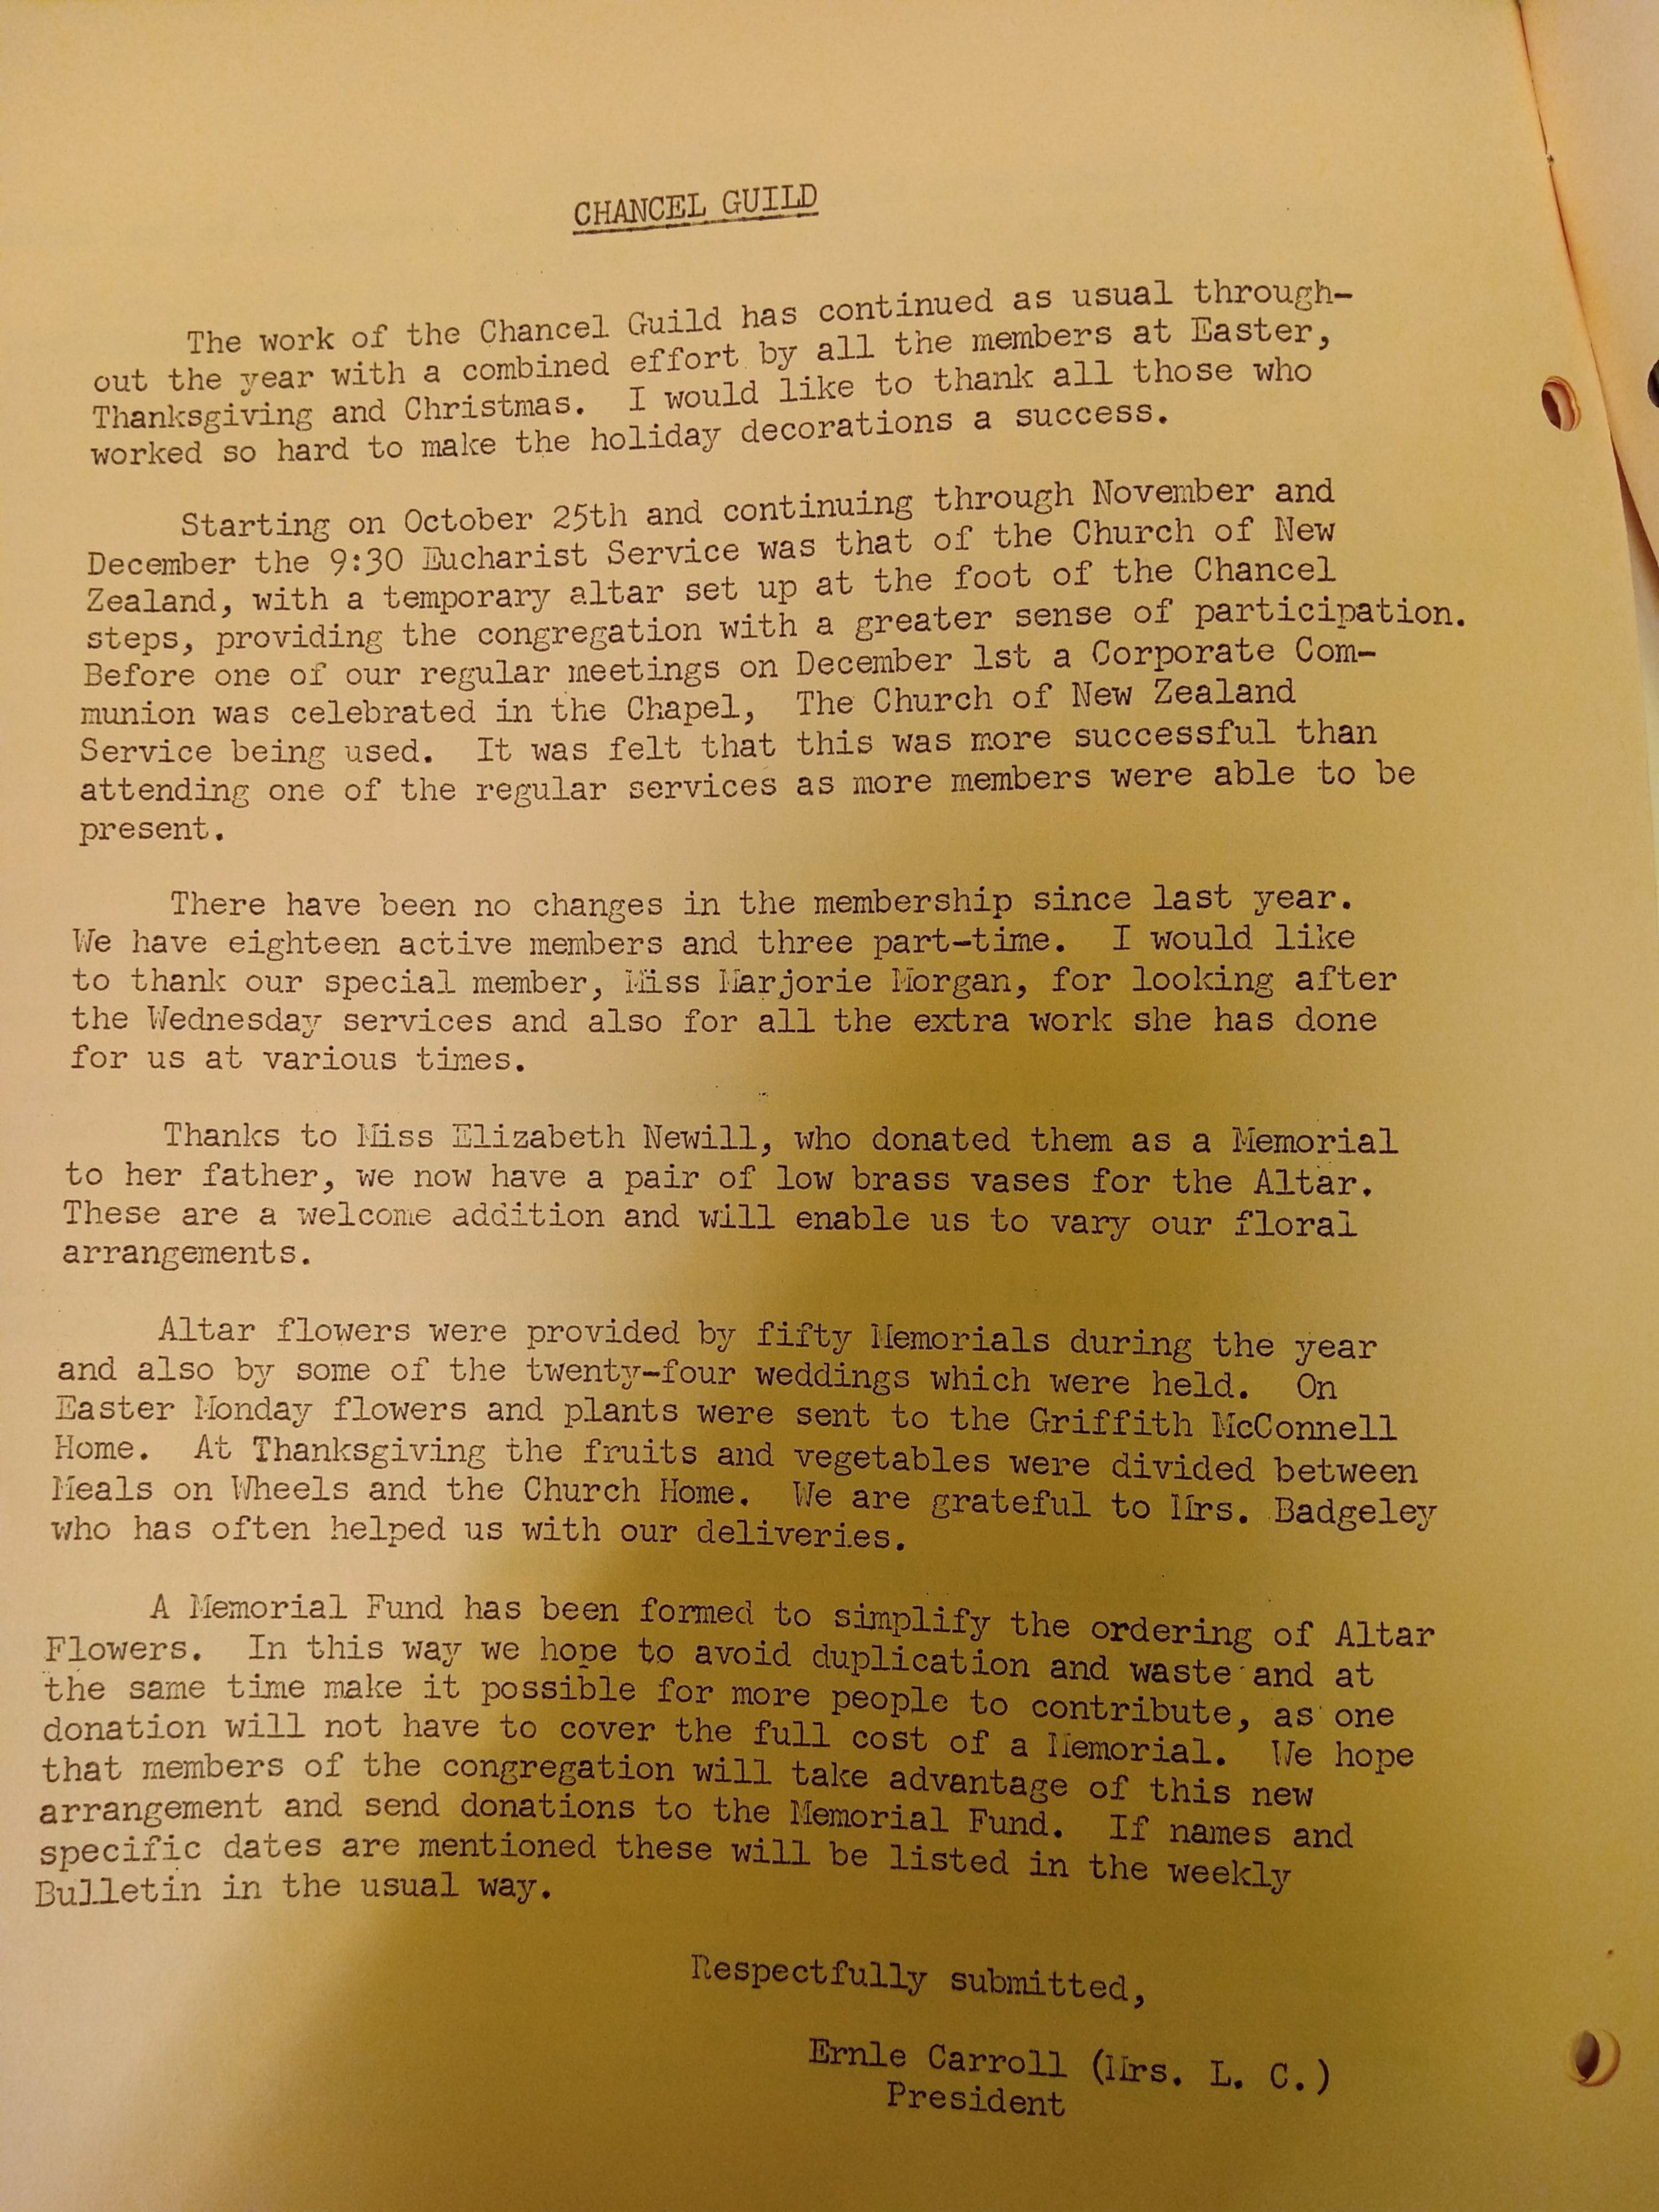 1971 Chancel Guild Report.jpg